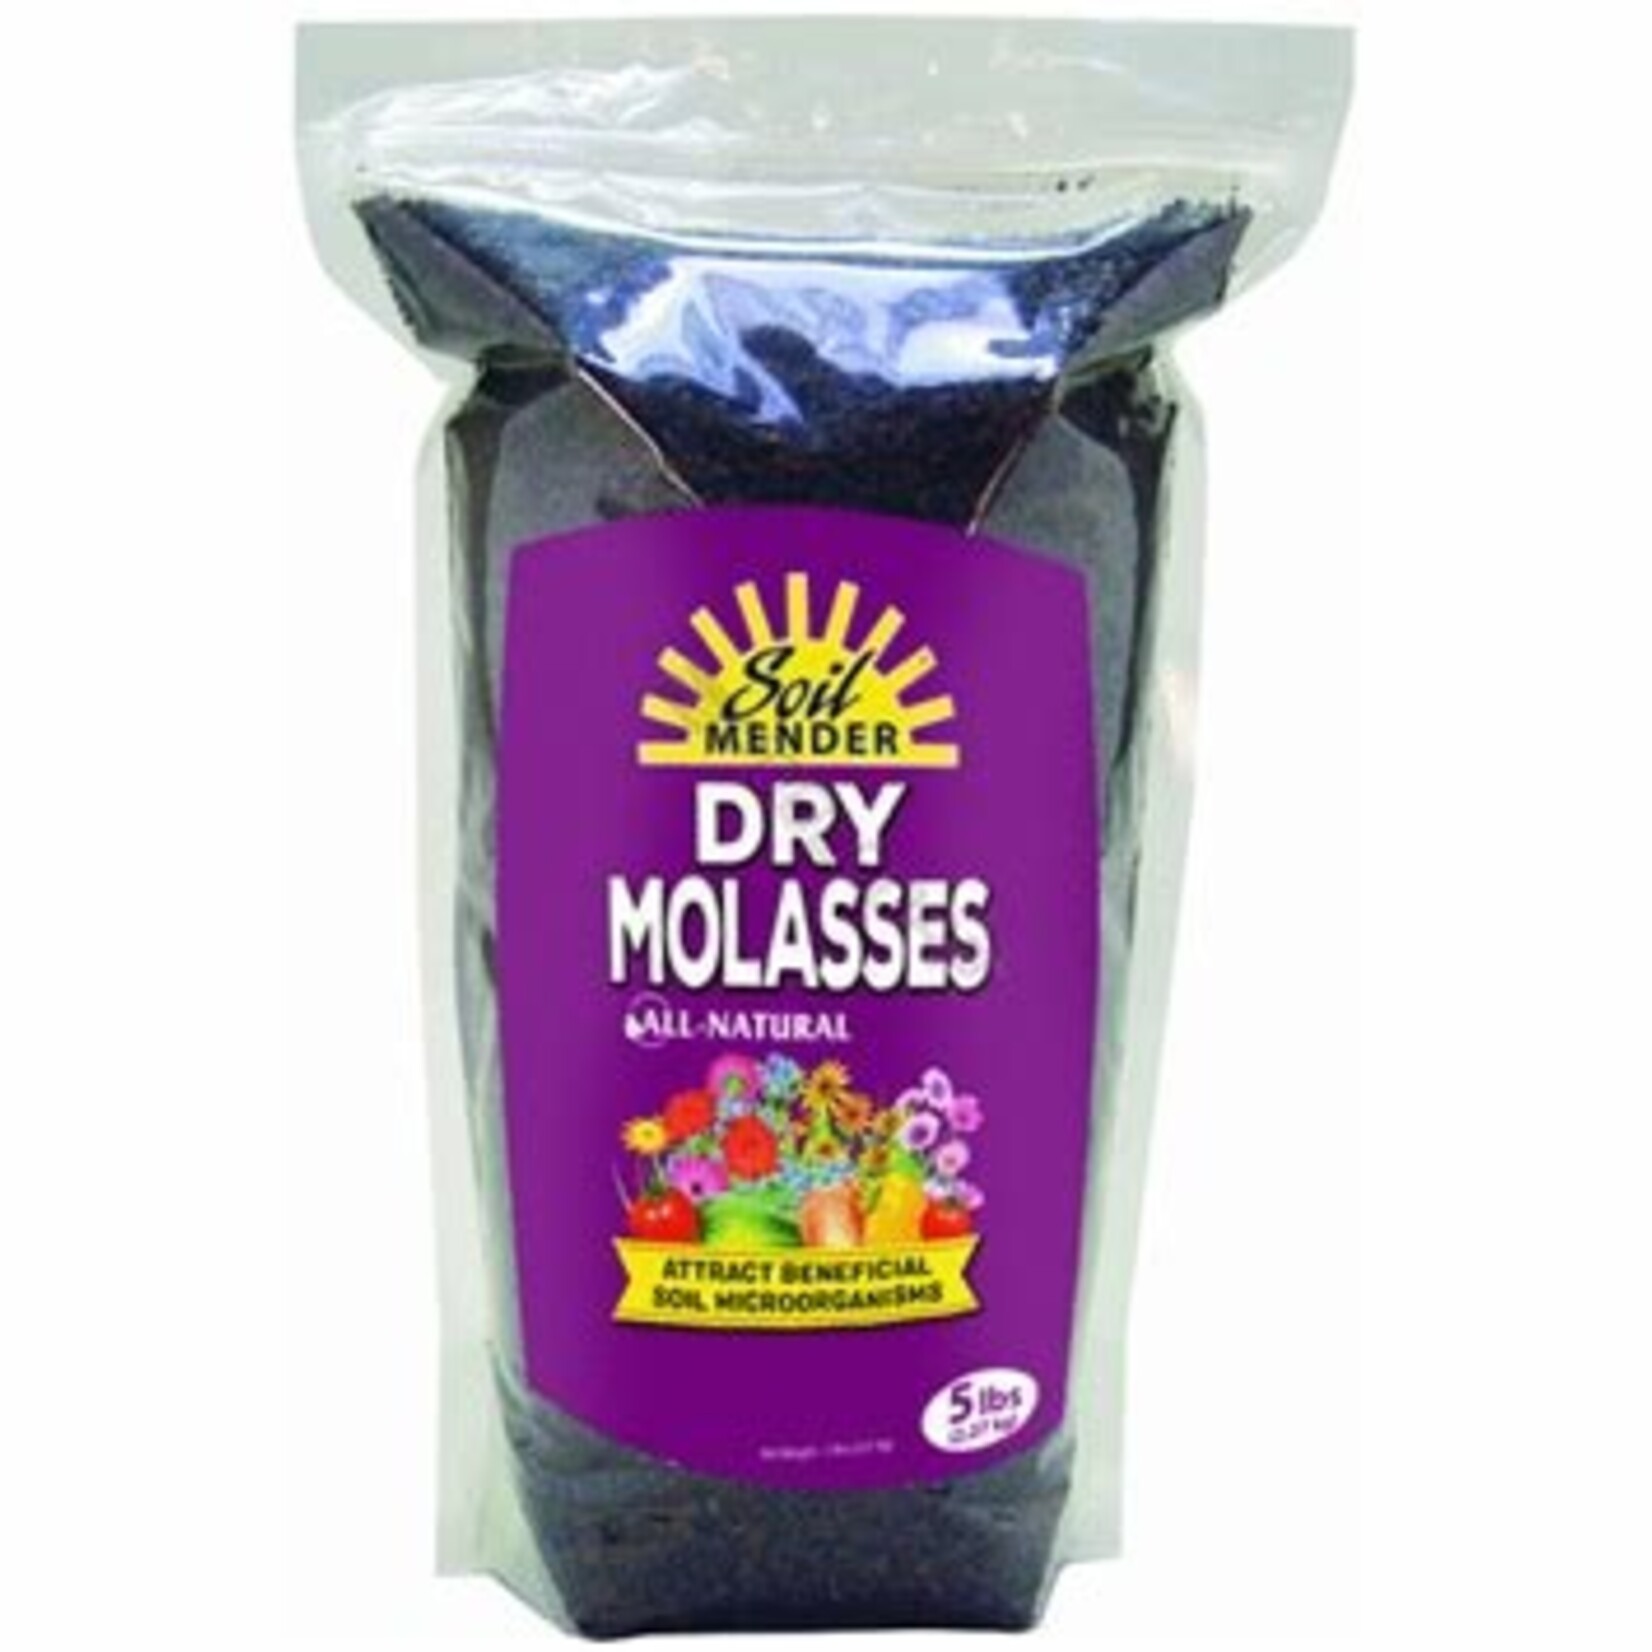 Soil Mender Soil Mender Dry Molasses, 5 lb